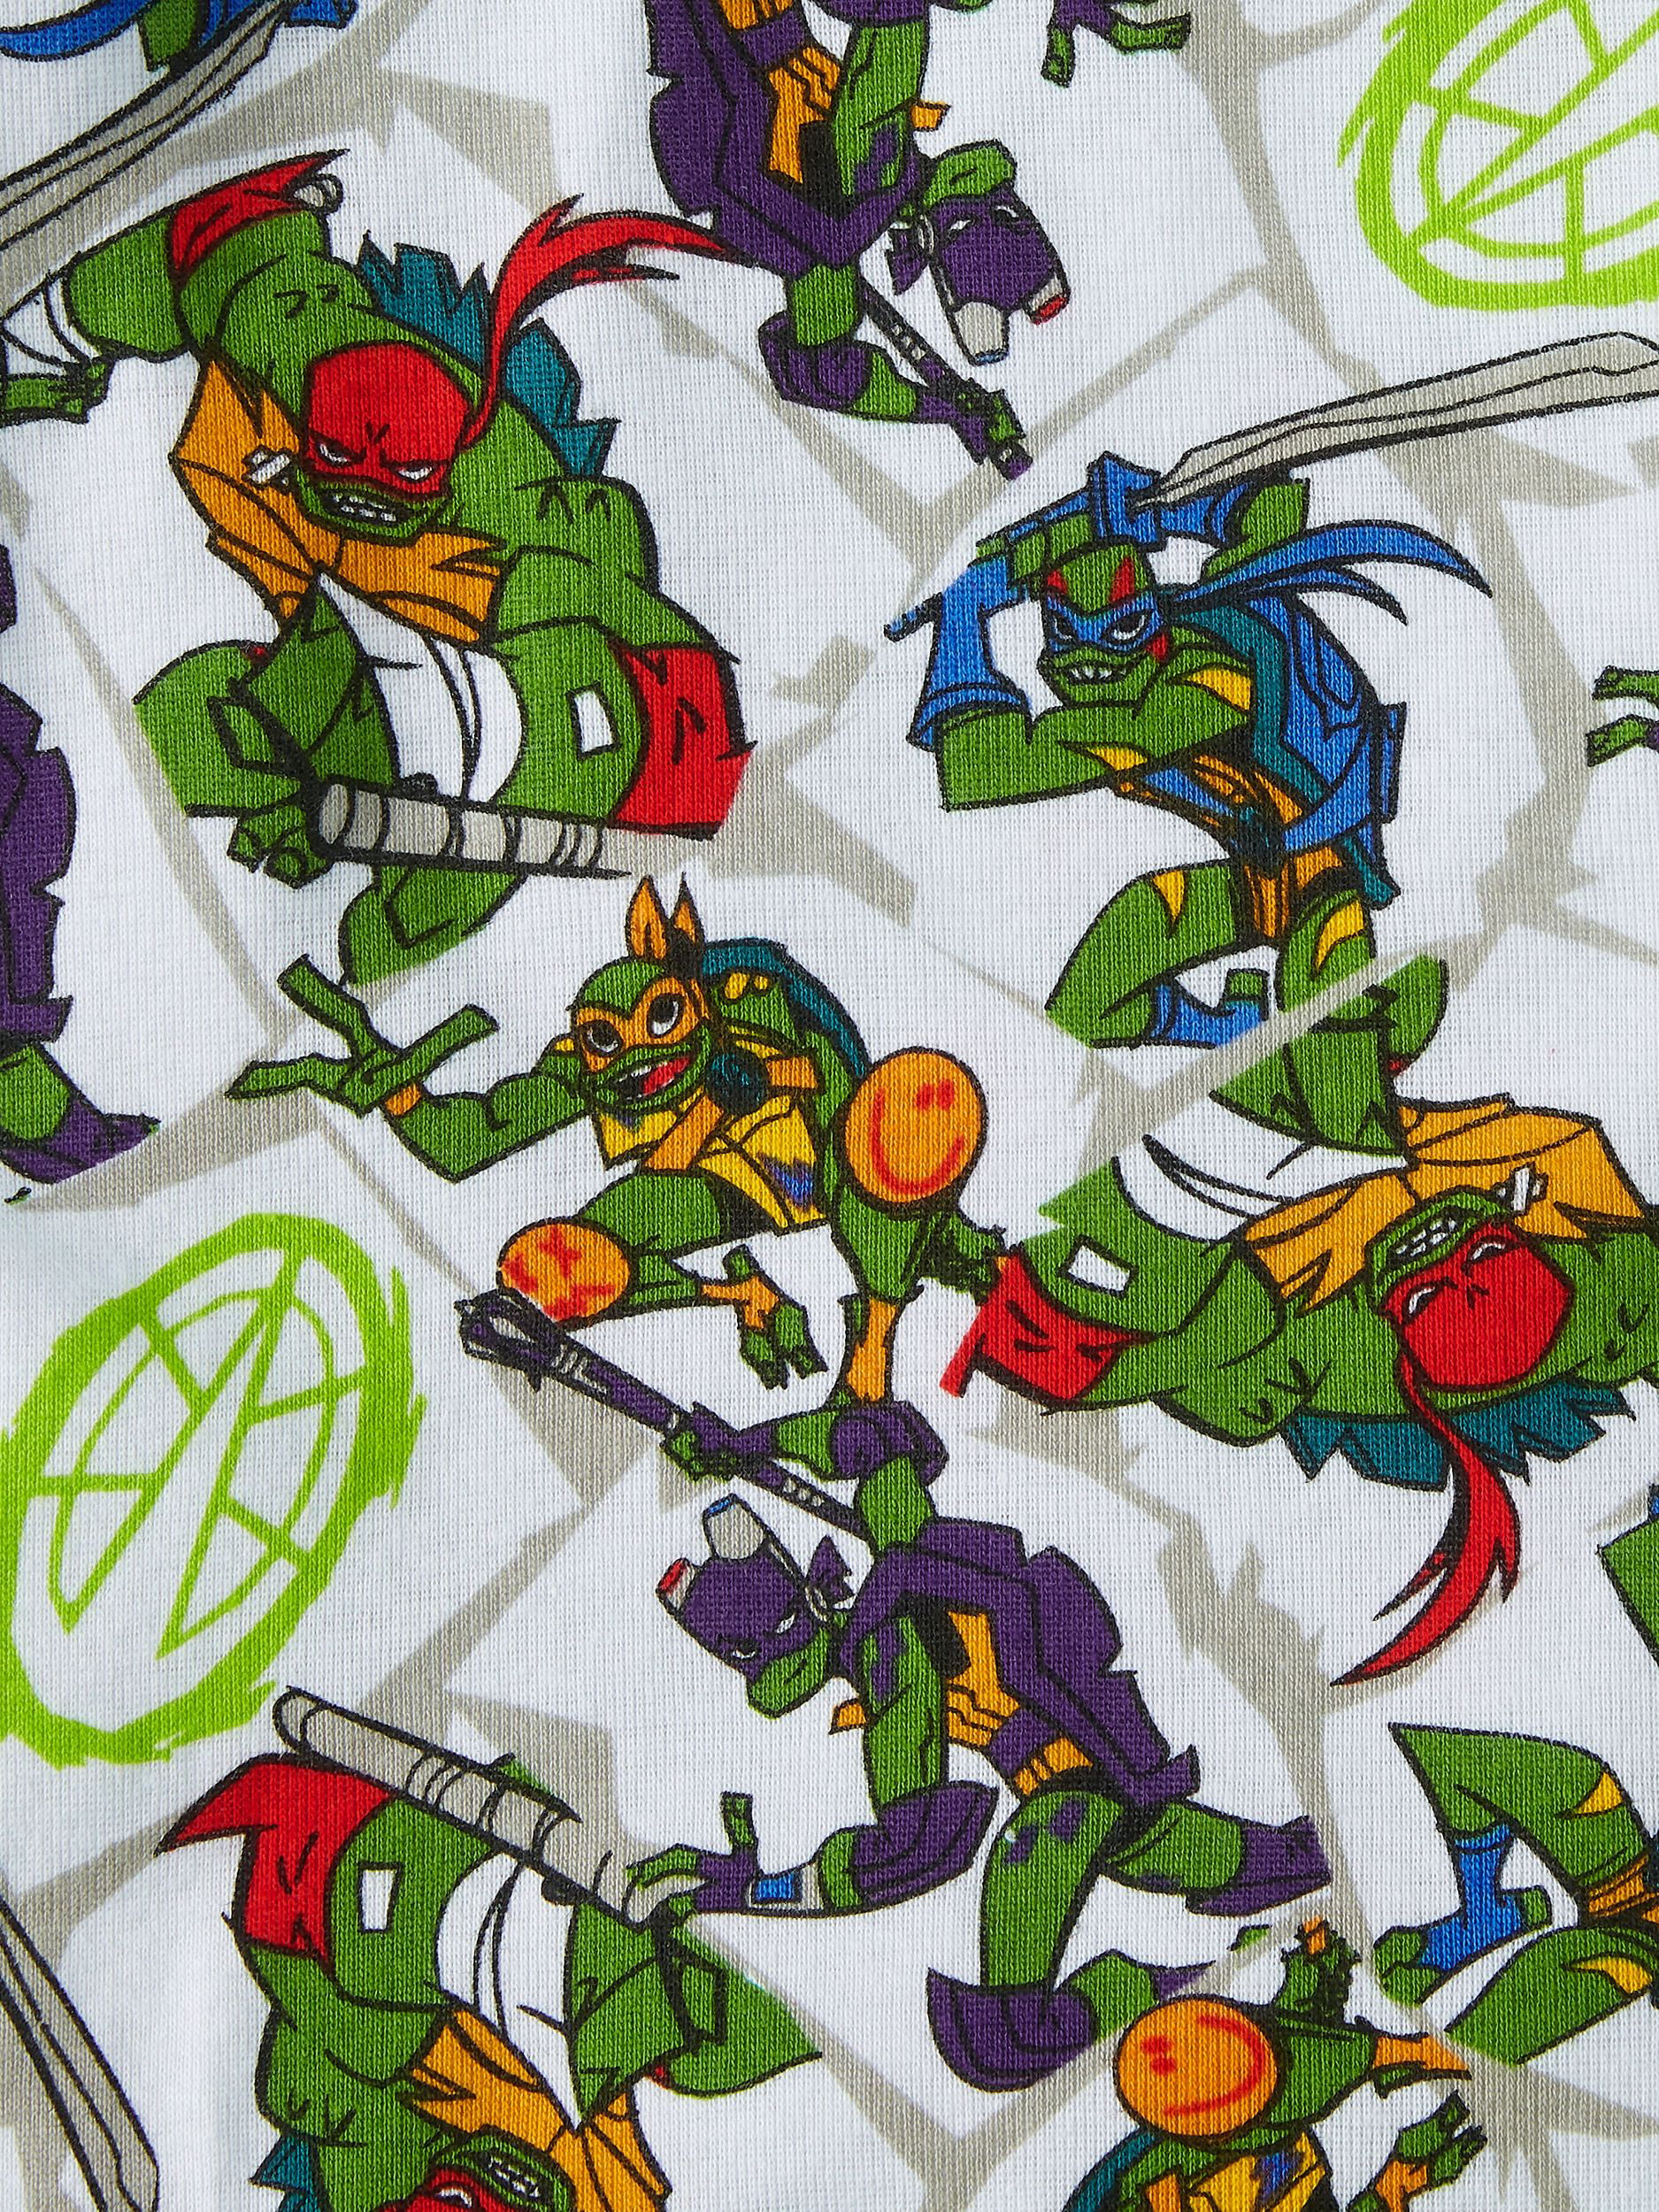 Boys 4-10 Teenage Mutant Ninja Turtles Ninja Power 4-Piece Pajama Set